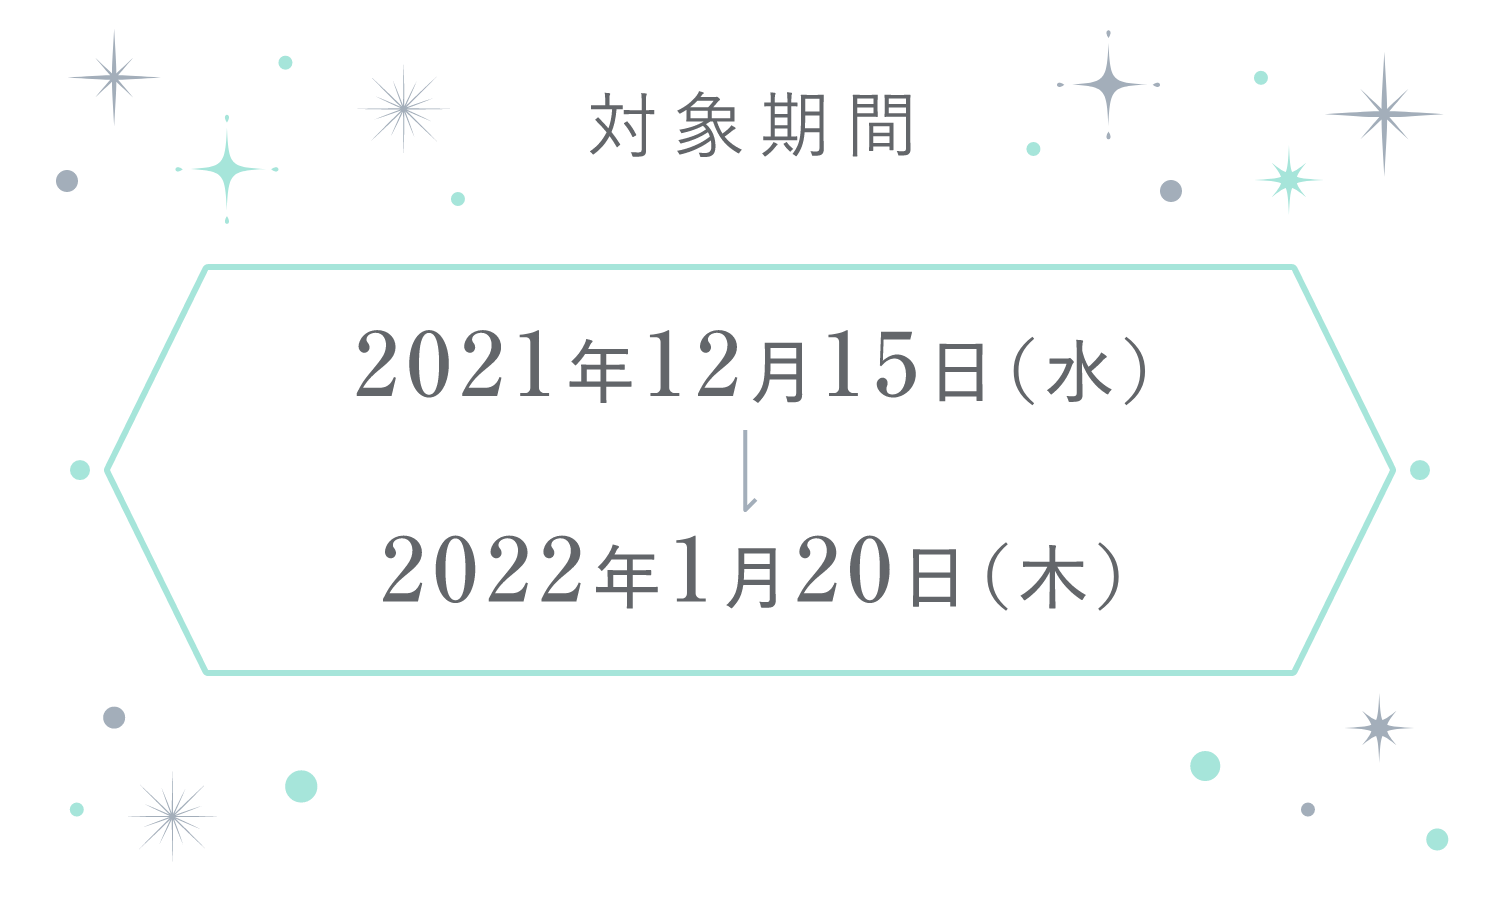 対象期間 2021年12月15日(水) 2021年1月20日(木)